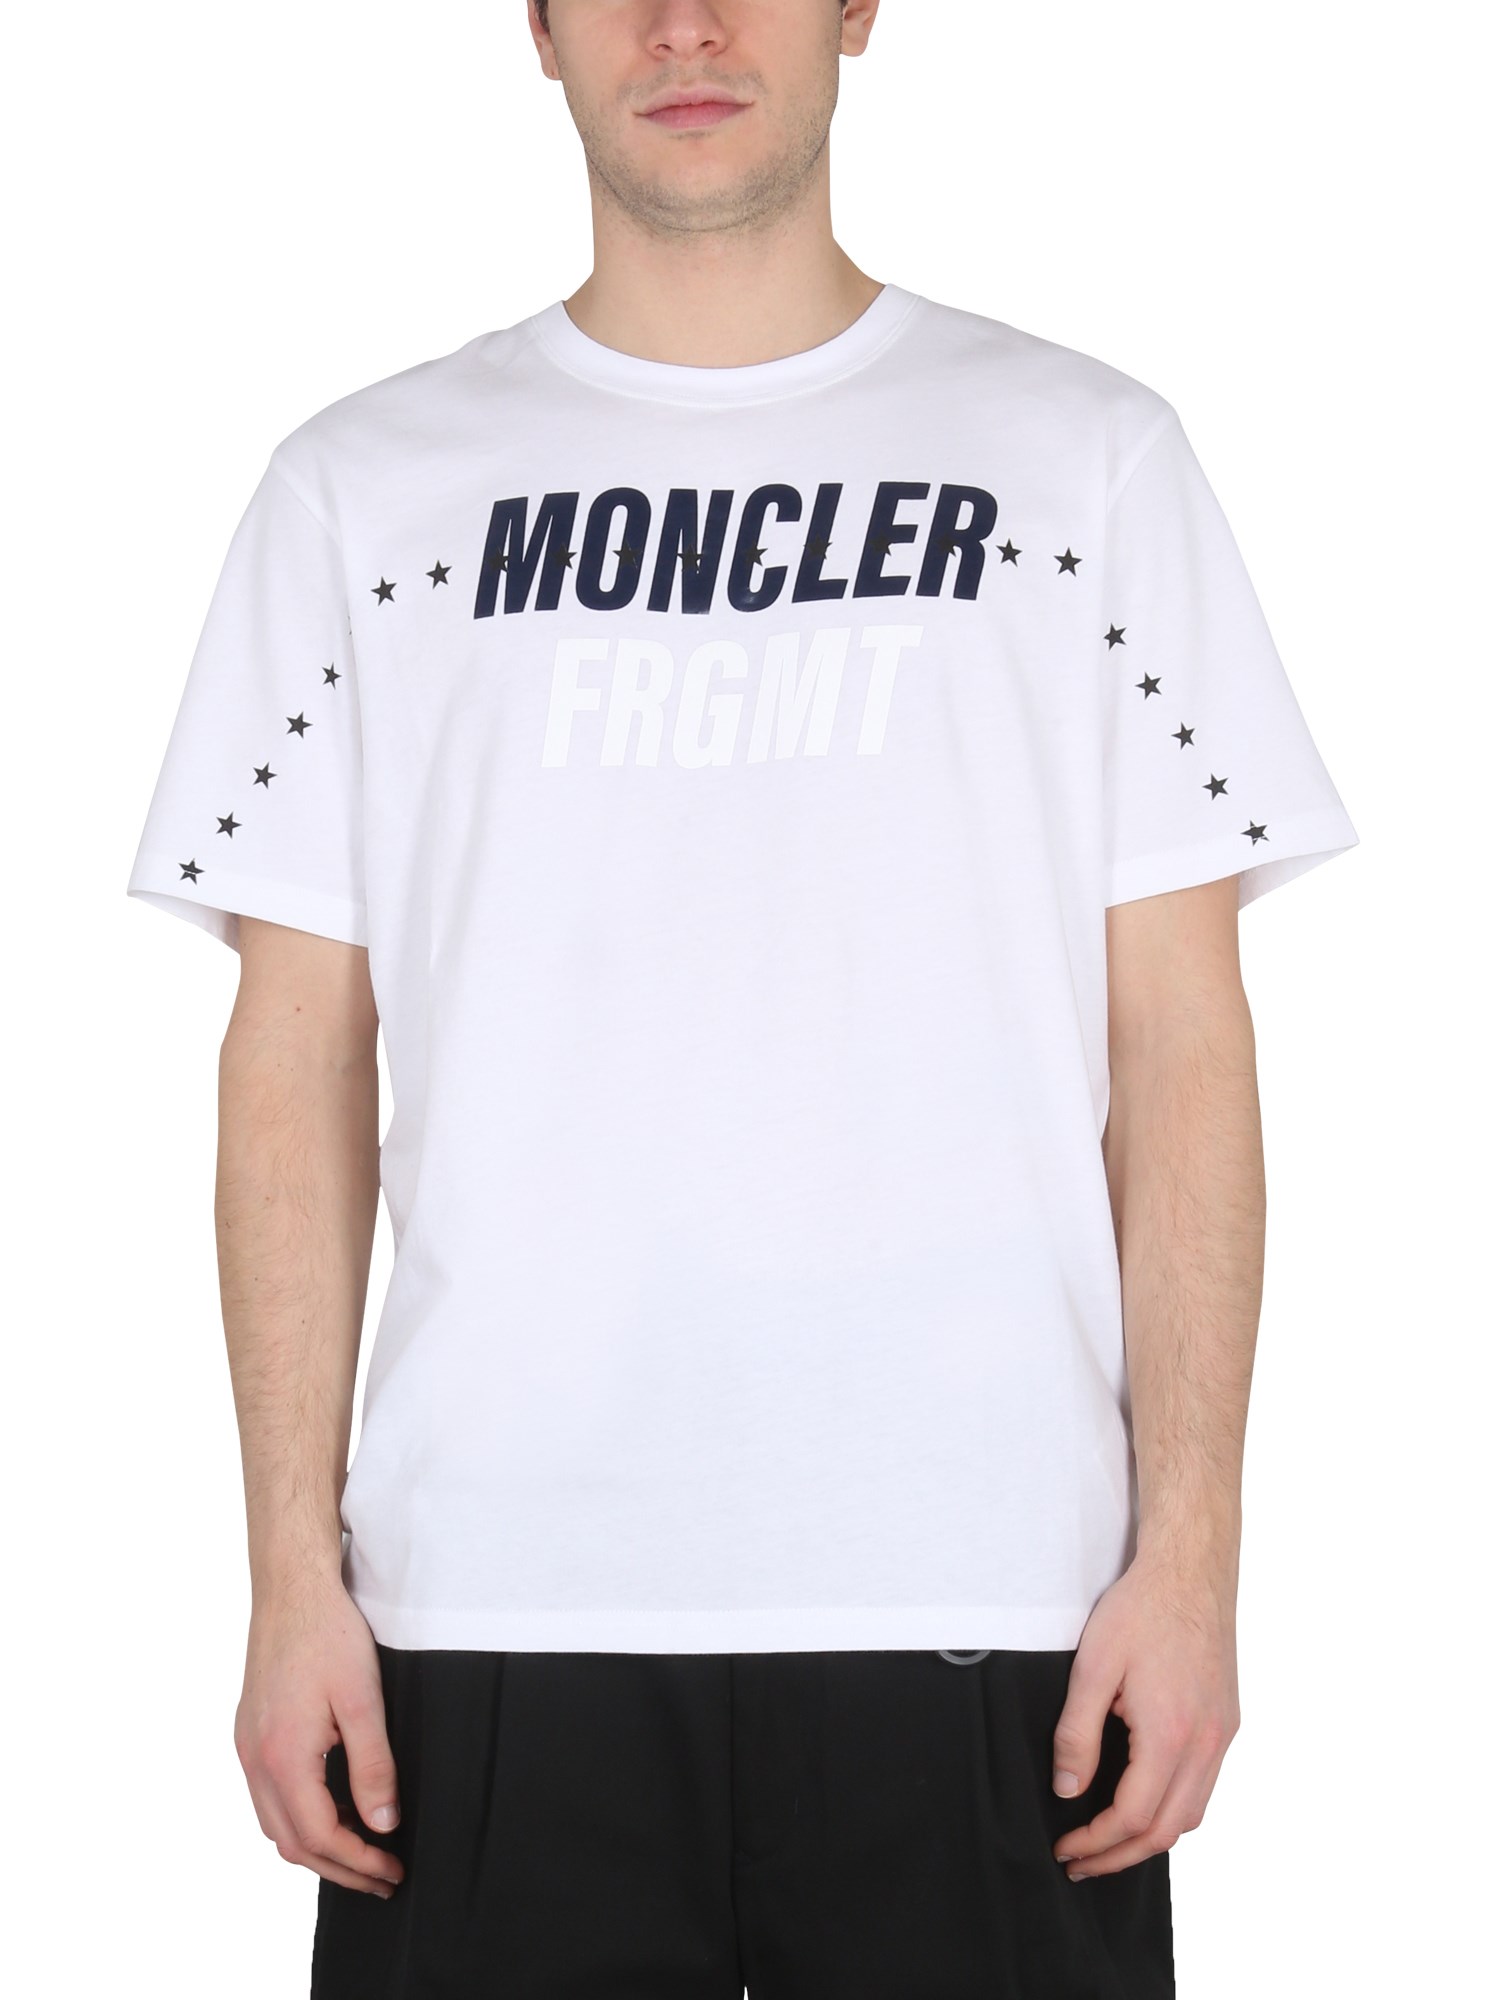 Moncler Genius moncler genius t-shirt with logo 7 moncler frgmt hiroshi fujiwara